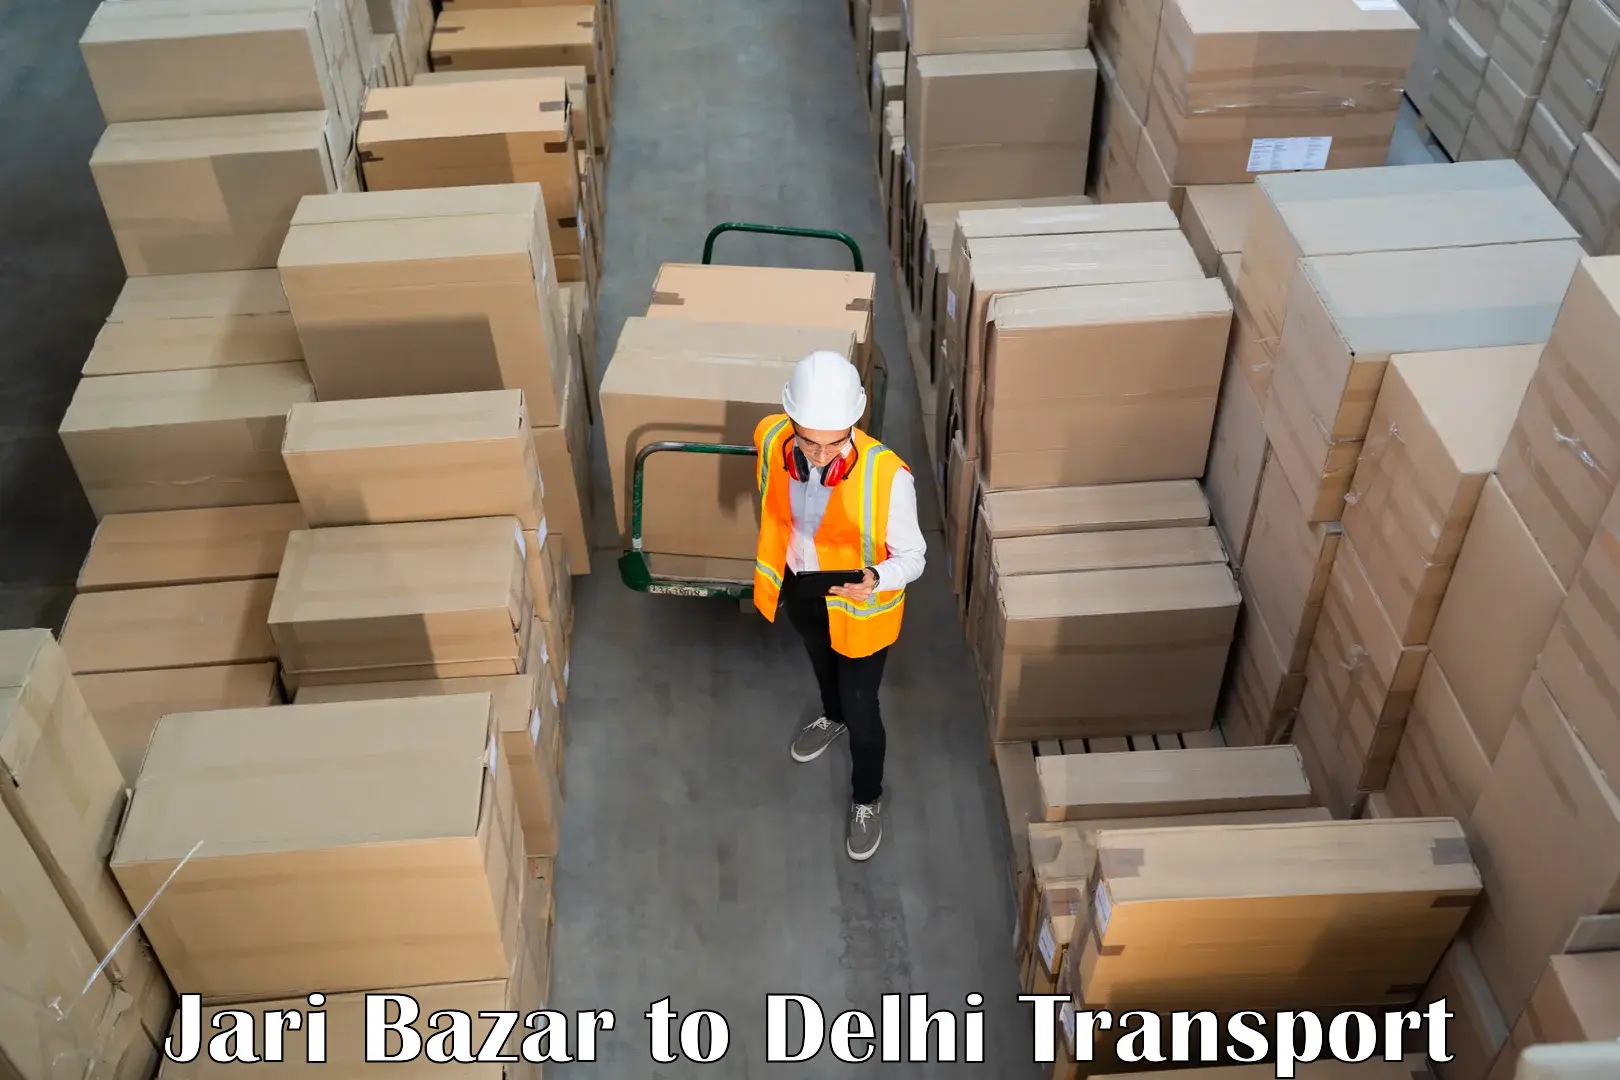 Commercial transport service Jari Bazar to East Delhi